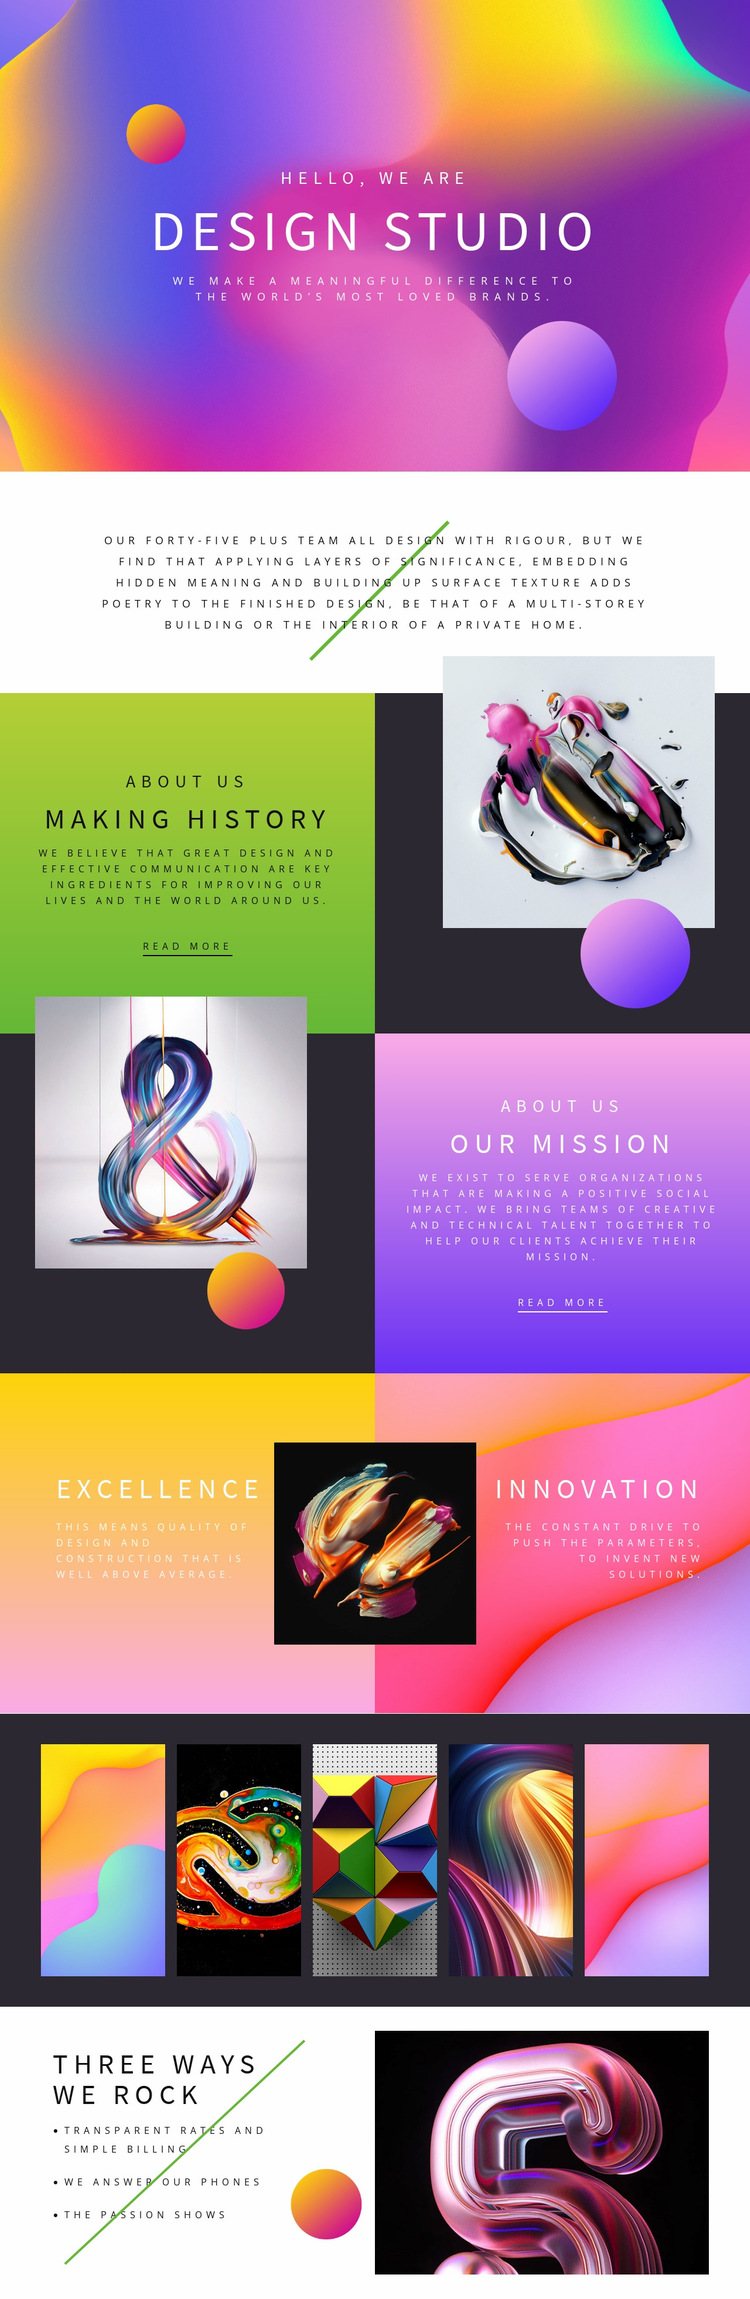 Progressive design art Web Page Design